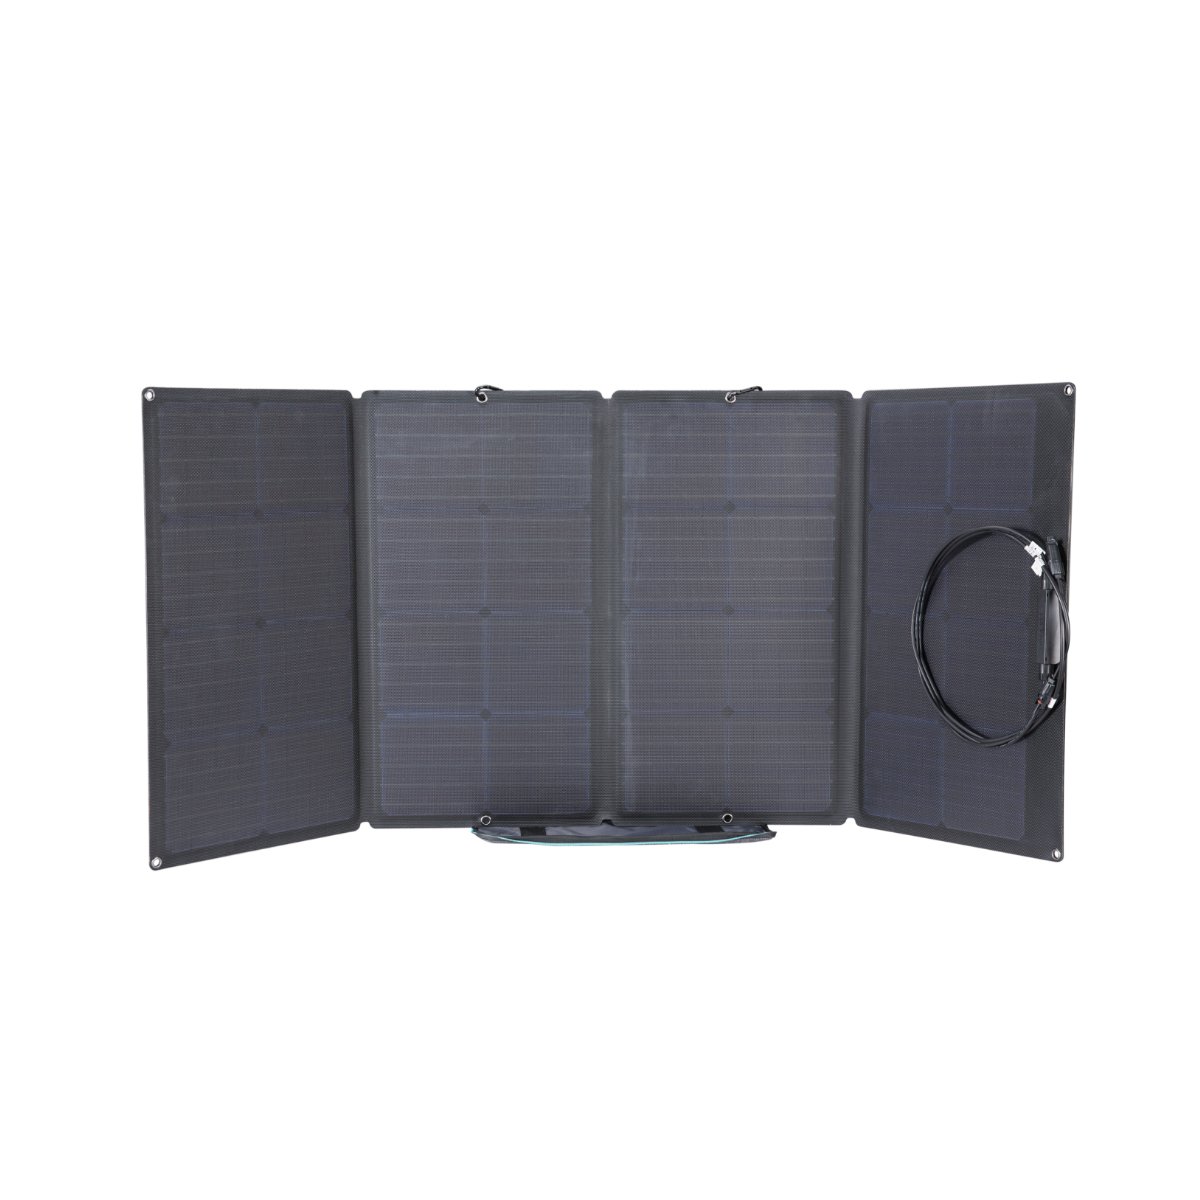 Tấm sạc điện năng lượng mặt trời ECOFLOW 160W Solar Panel